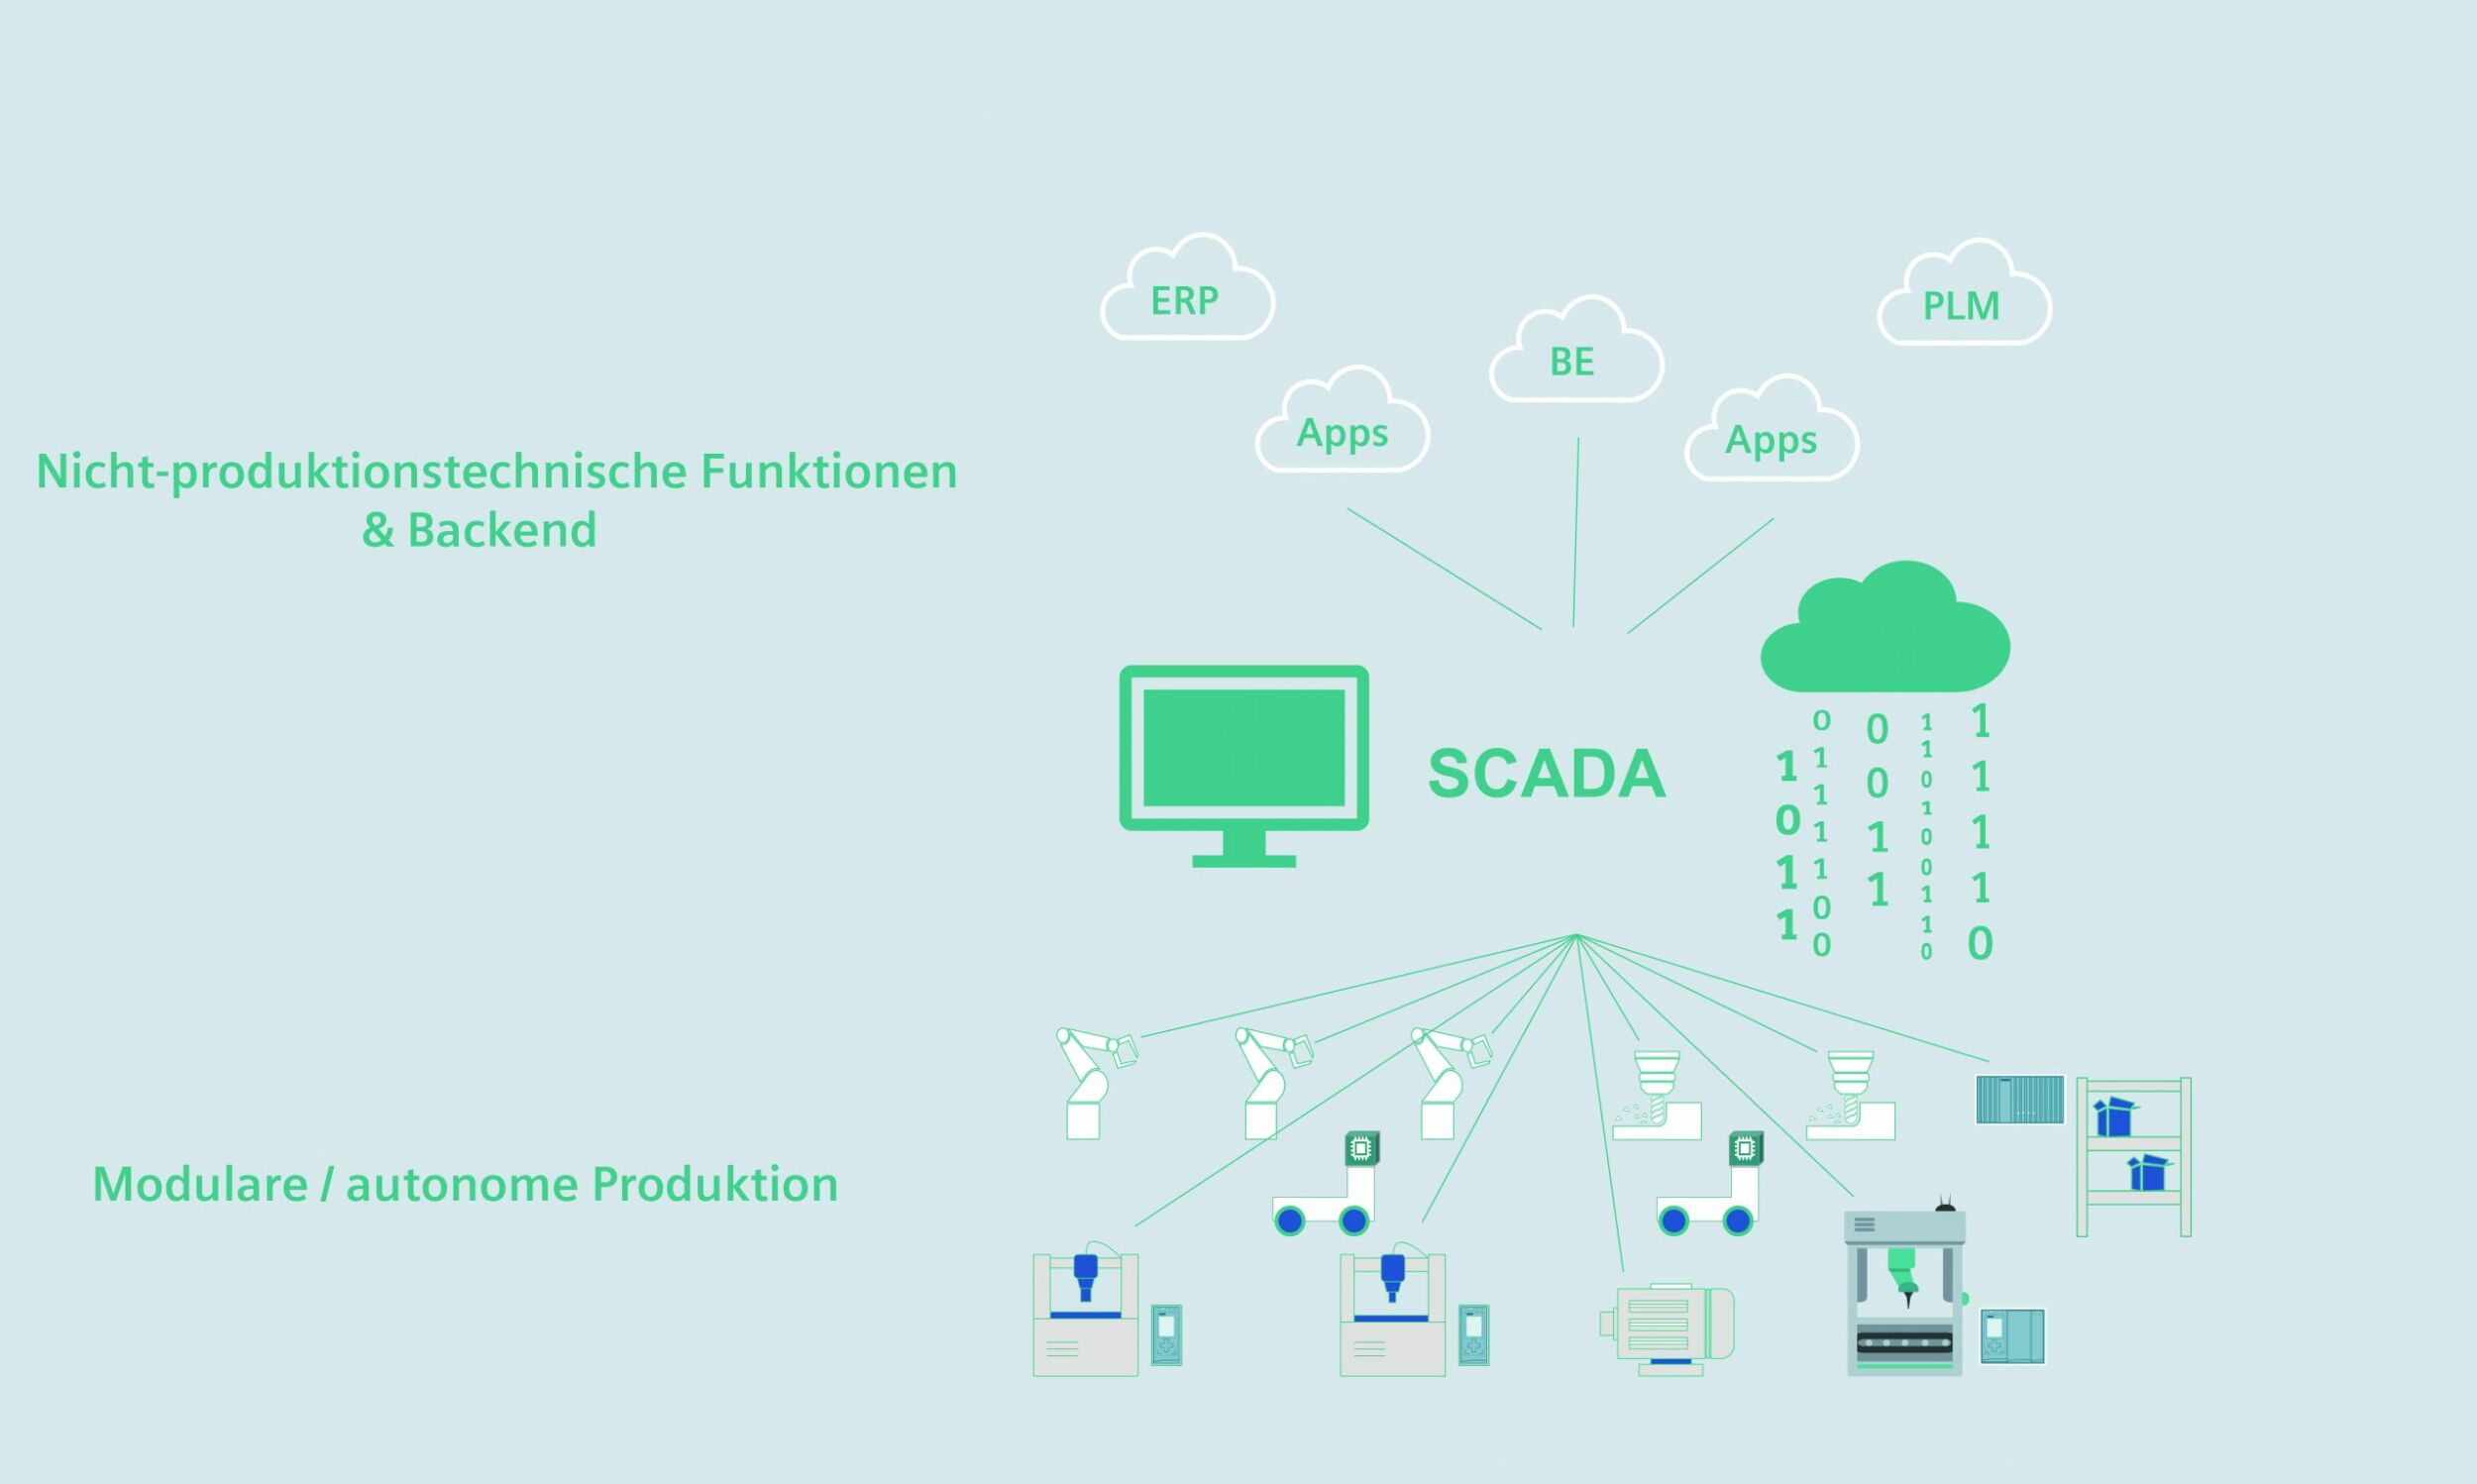 Scada-Systeme verbinden als operative Datenschicht Umgebungen und Anwendungen auf Cloud-, MES-/MIS- oder Web-Ebene mit den Systemen in der Produktion. (Bild: Siemens AG)